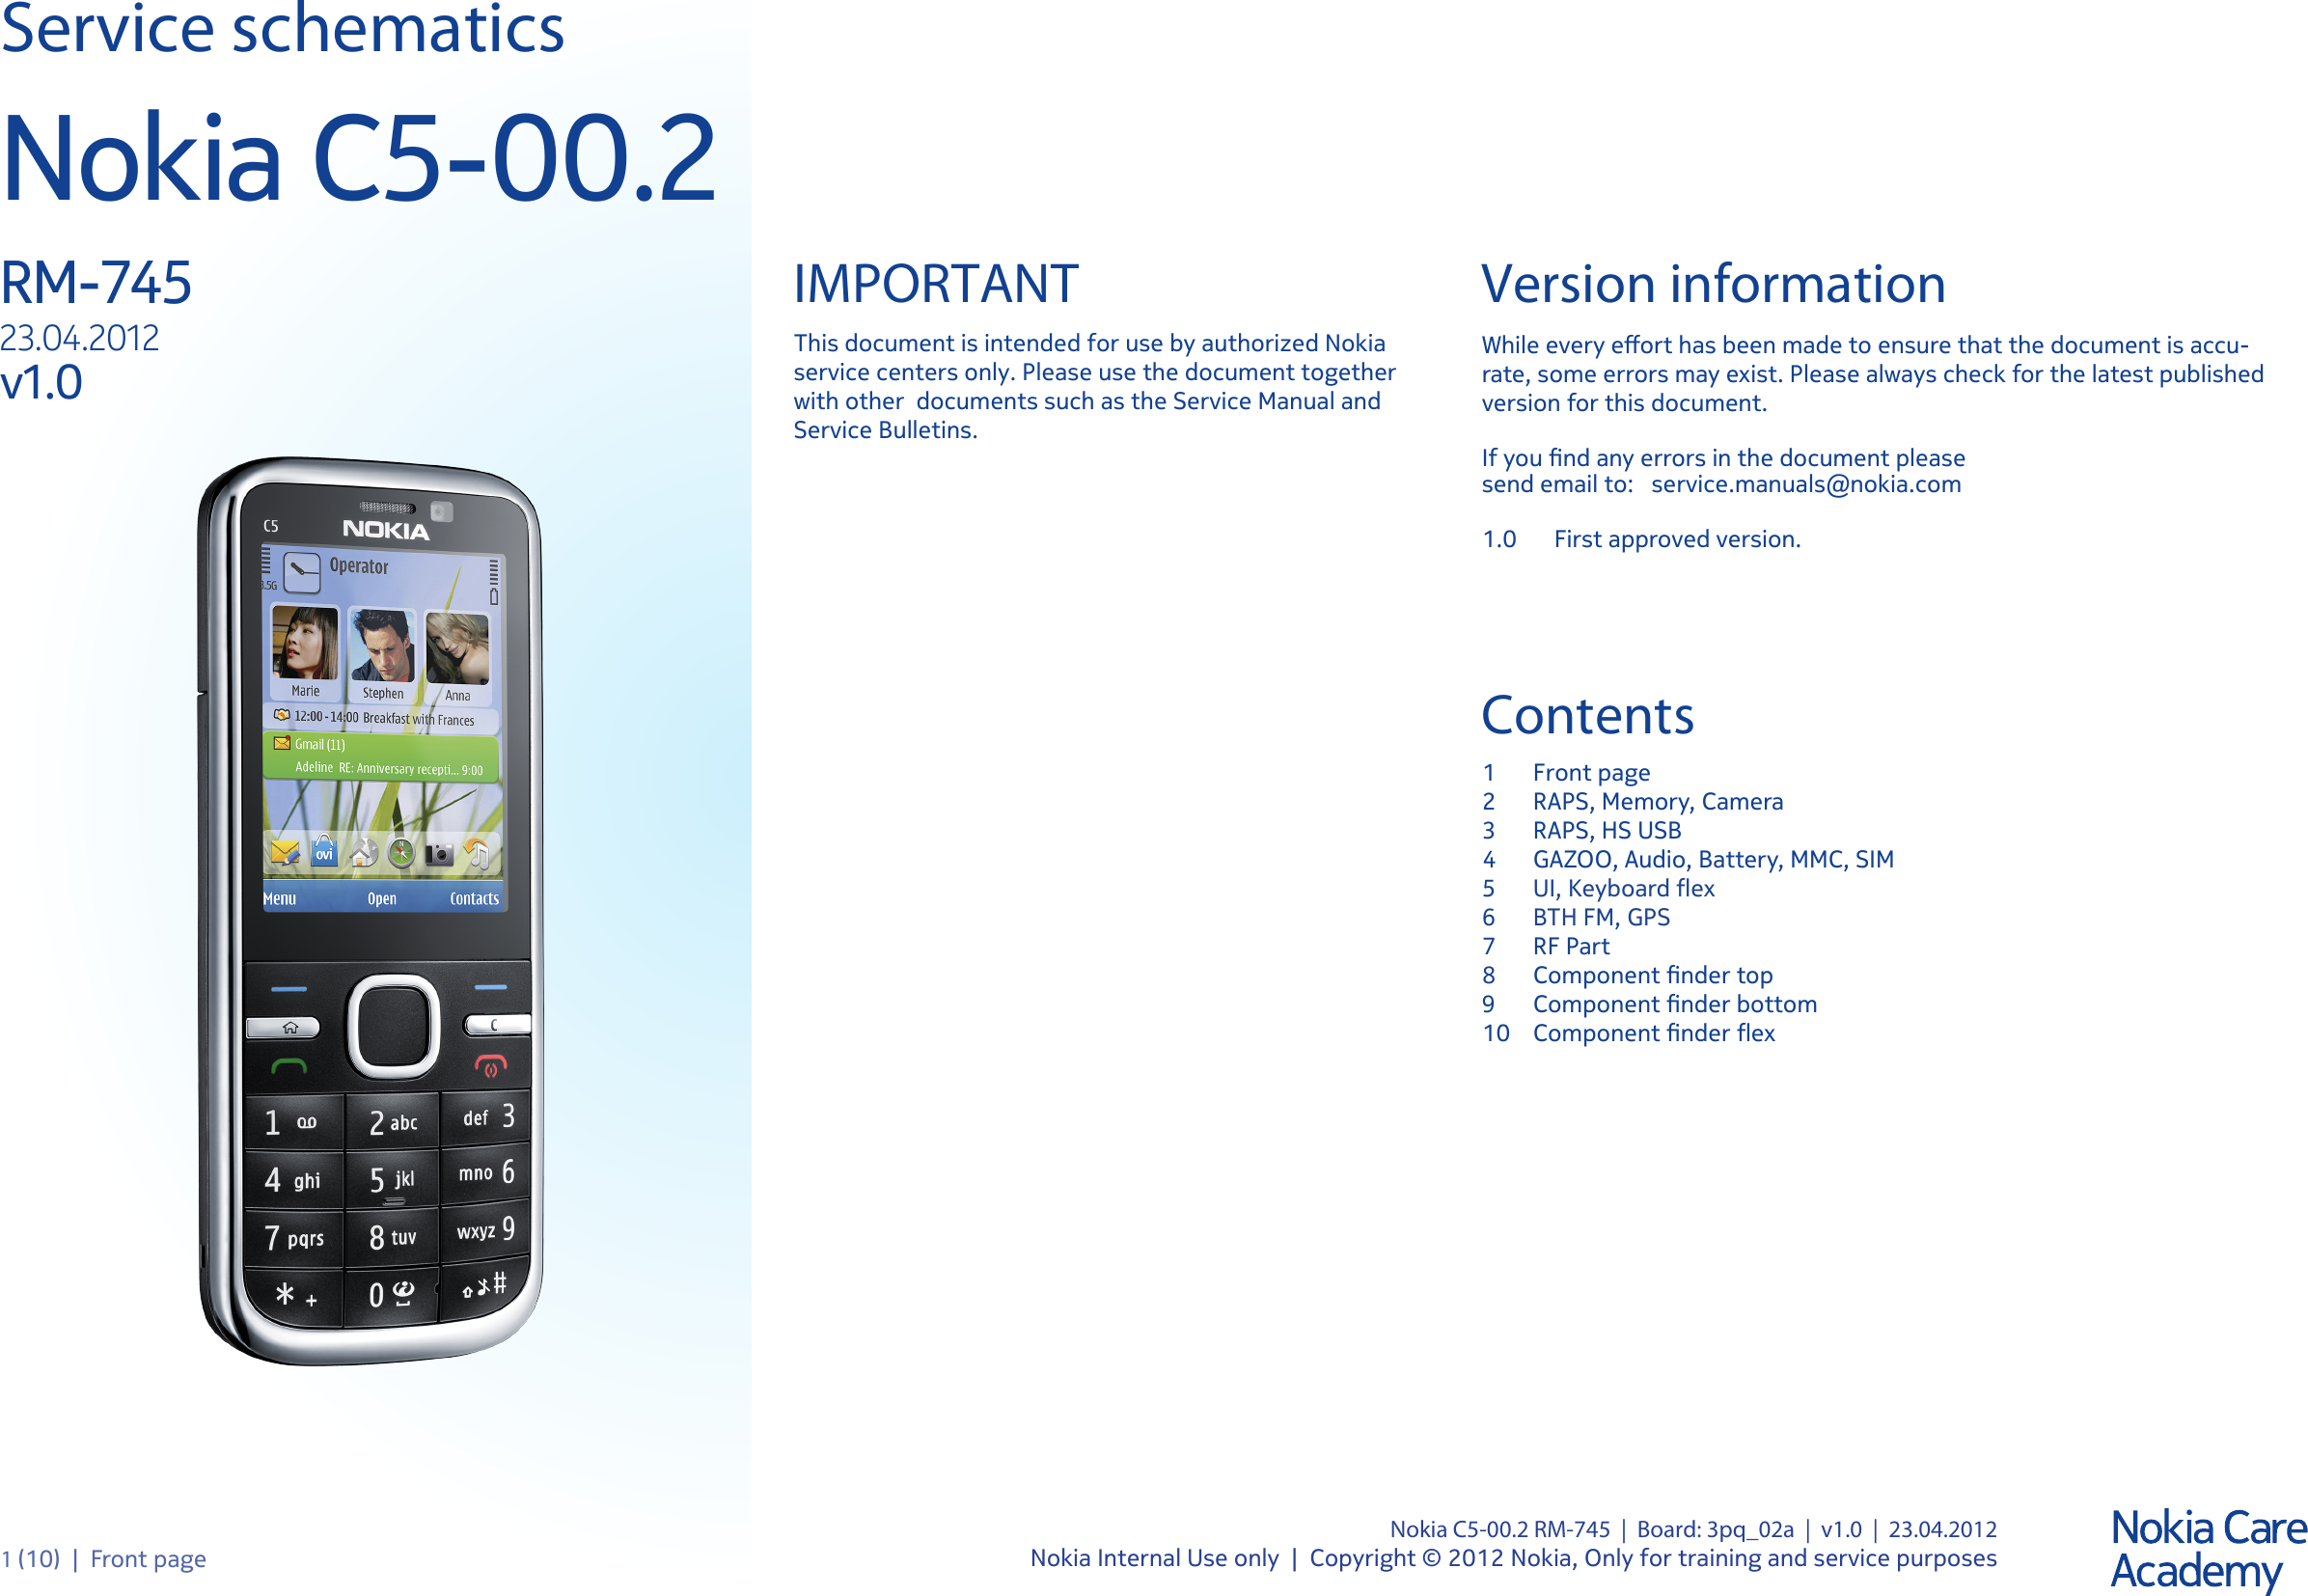 Page 1 of 11 - Nokia C5-00.2 RM-745 - Service Schematics. Www.s-manuals.com. Schematics V1.0